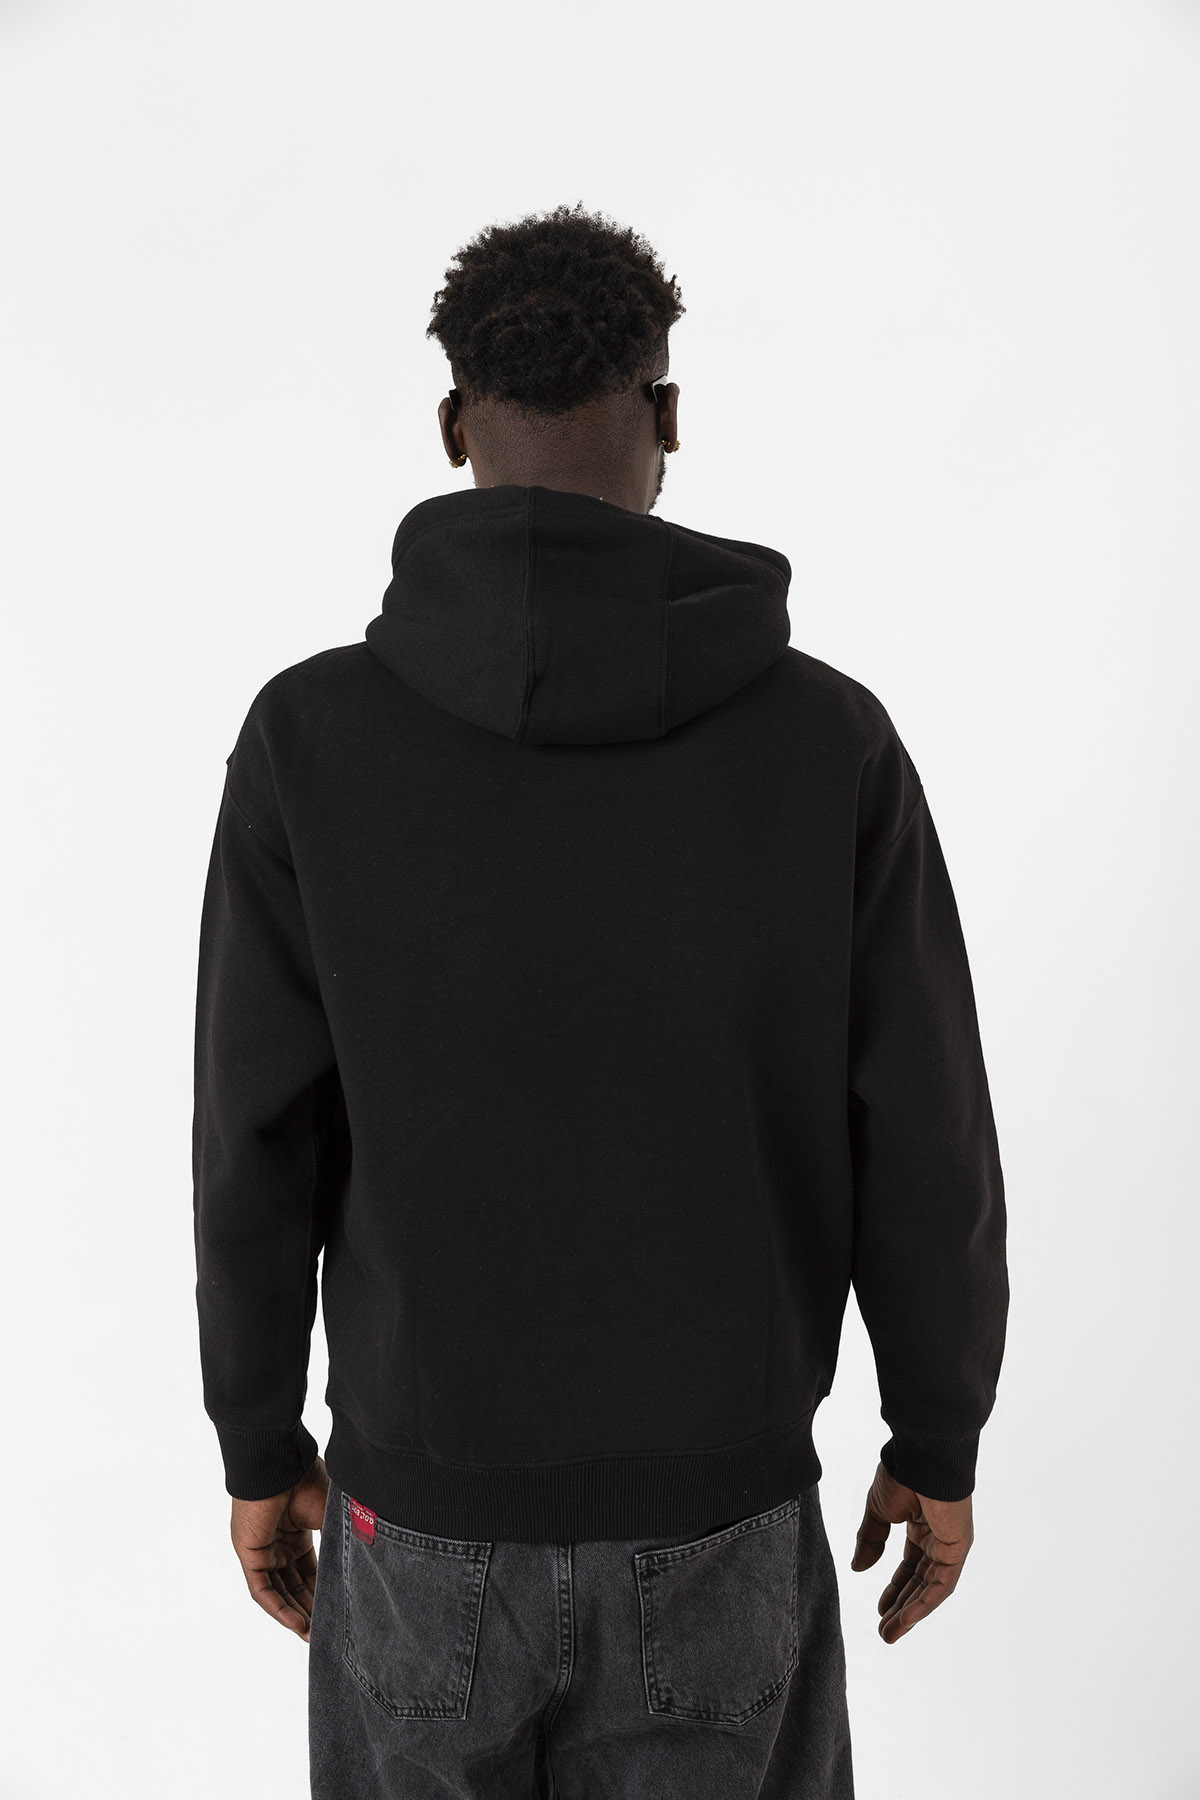 3 Body Problem Logo Siyah Erkek 3ip Kapşonlu Sweatshirt